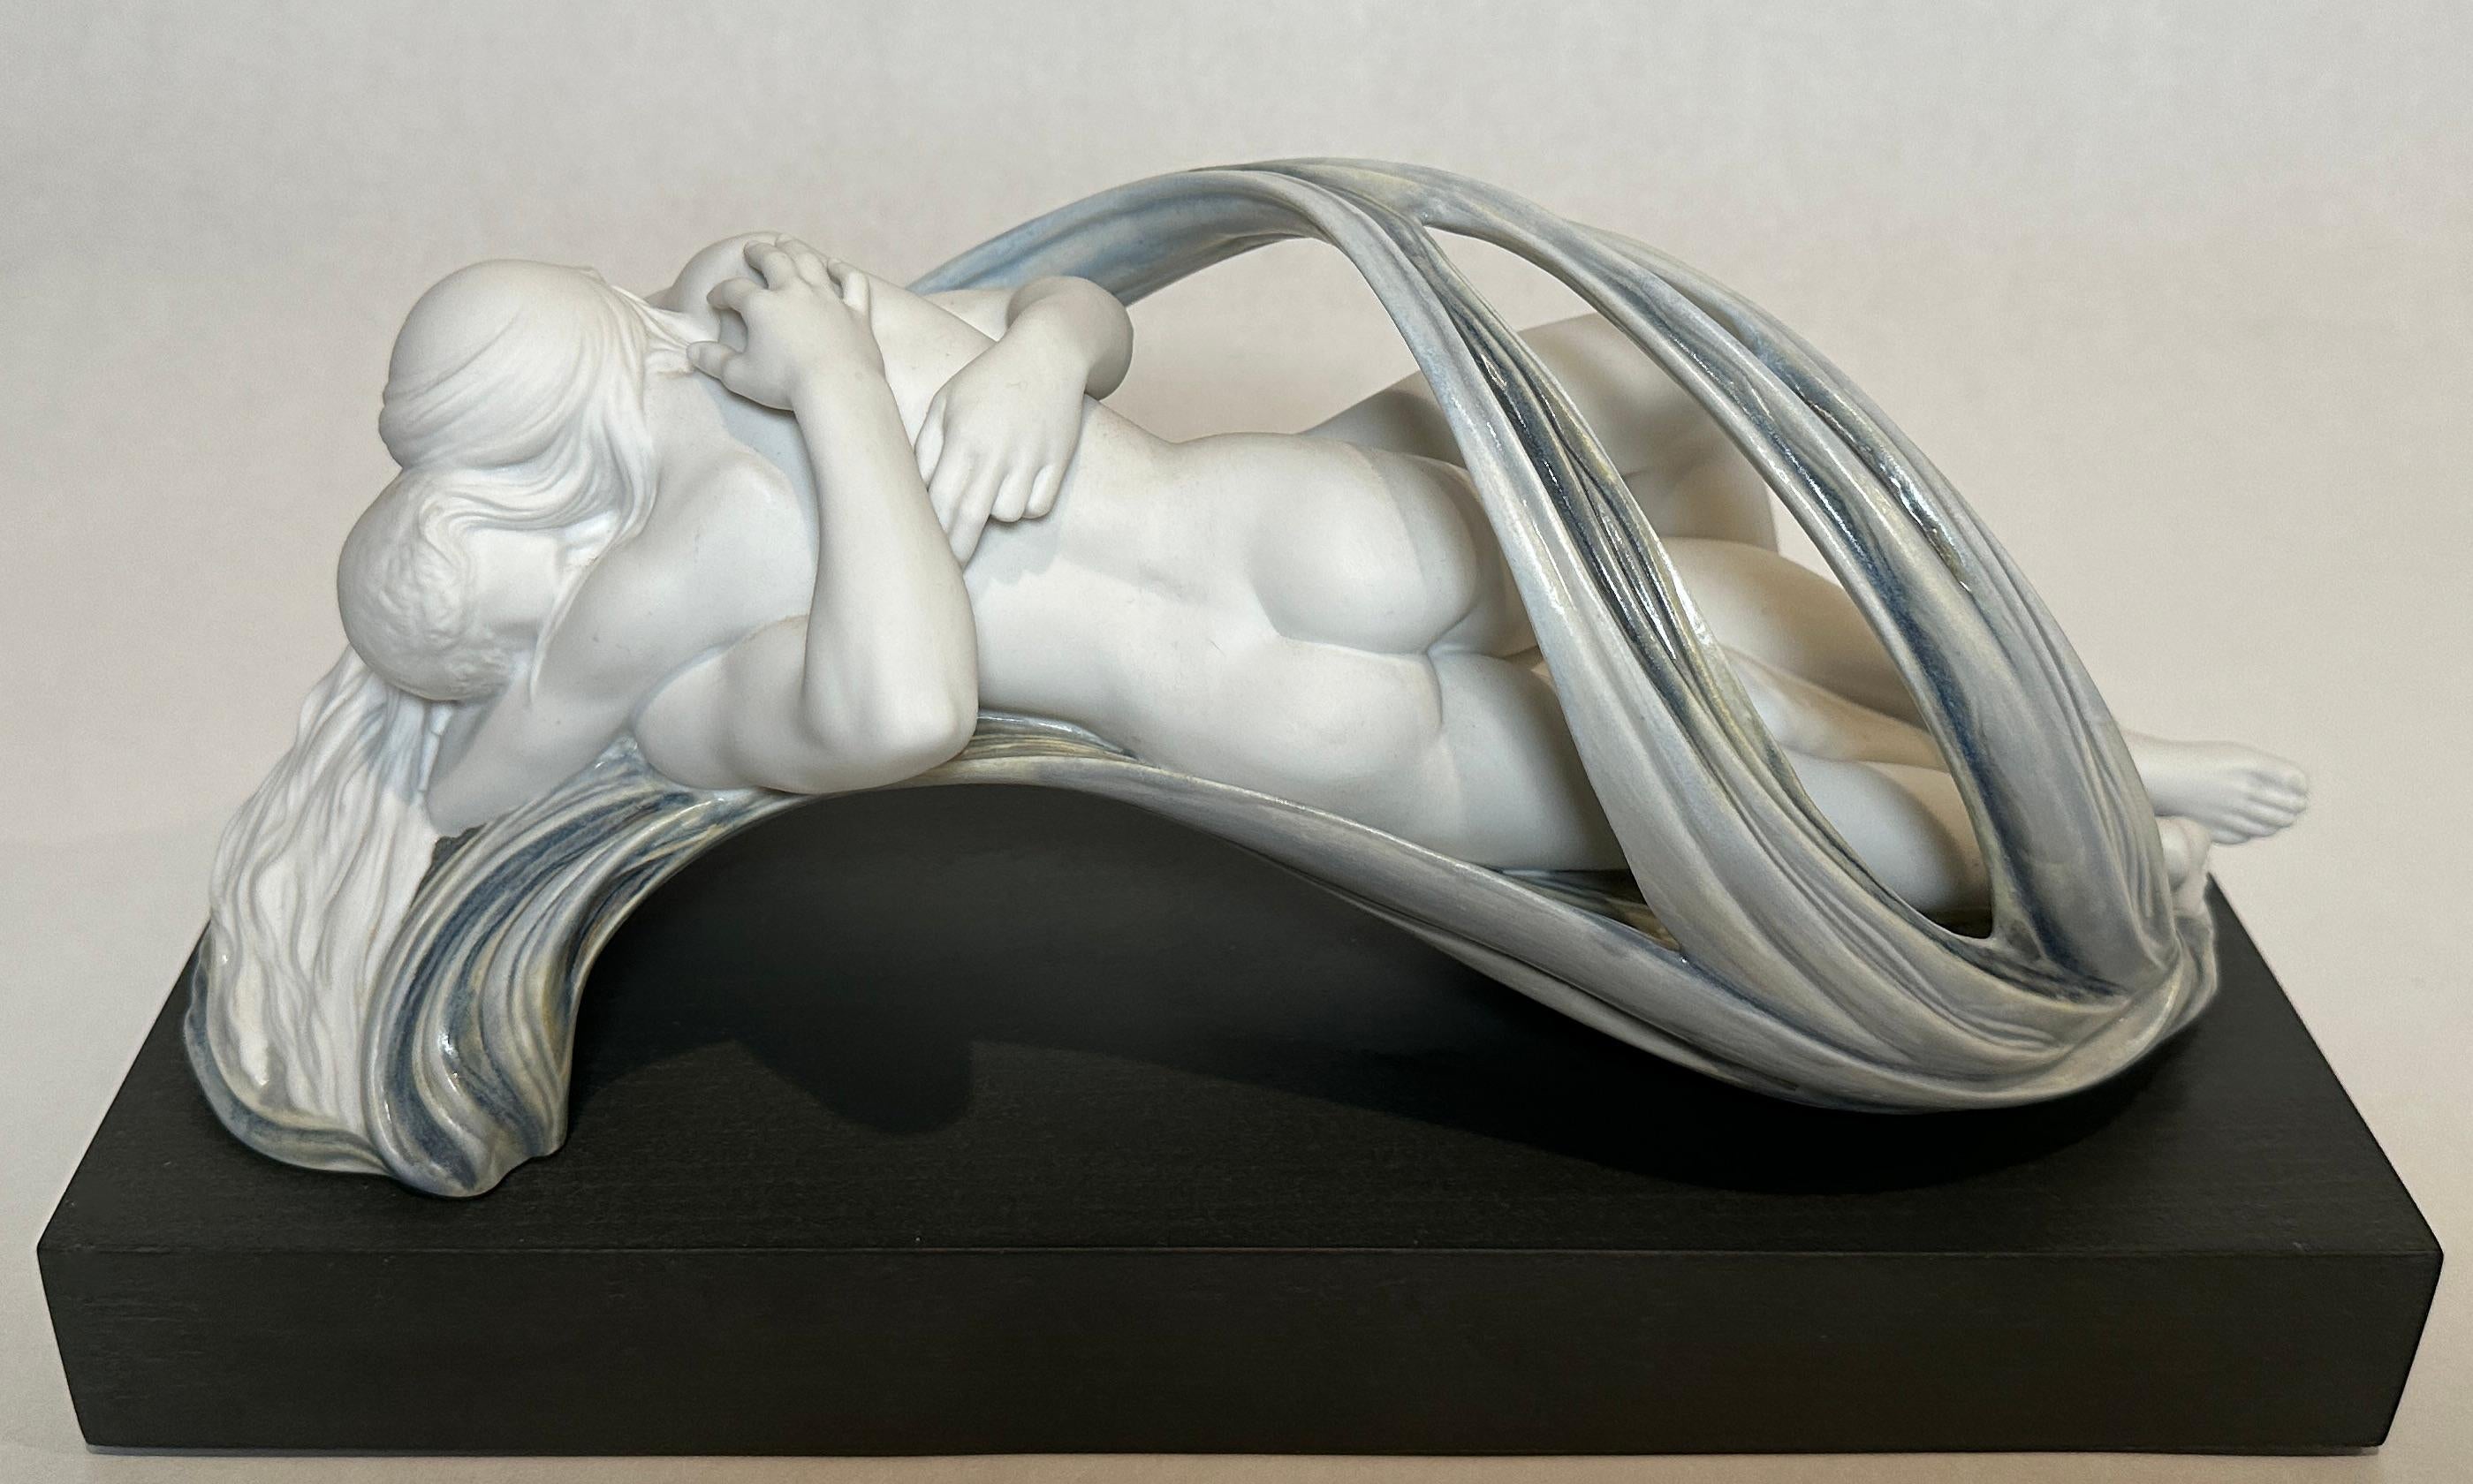 Sculpture en porcelaine de Lladro Amor et Desirerium sculptée par Ernest Massuet pour Lladro. Traduit par Amour et Désir, figurine en porcelaine au fini mat et émaillé.
Deux vies se confondent. Suspendu dans les airs, le couple est entouré de